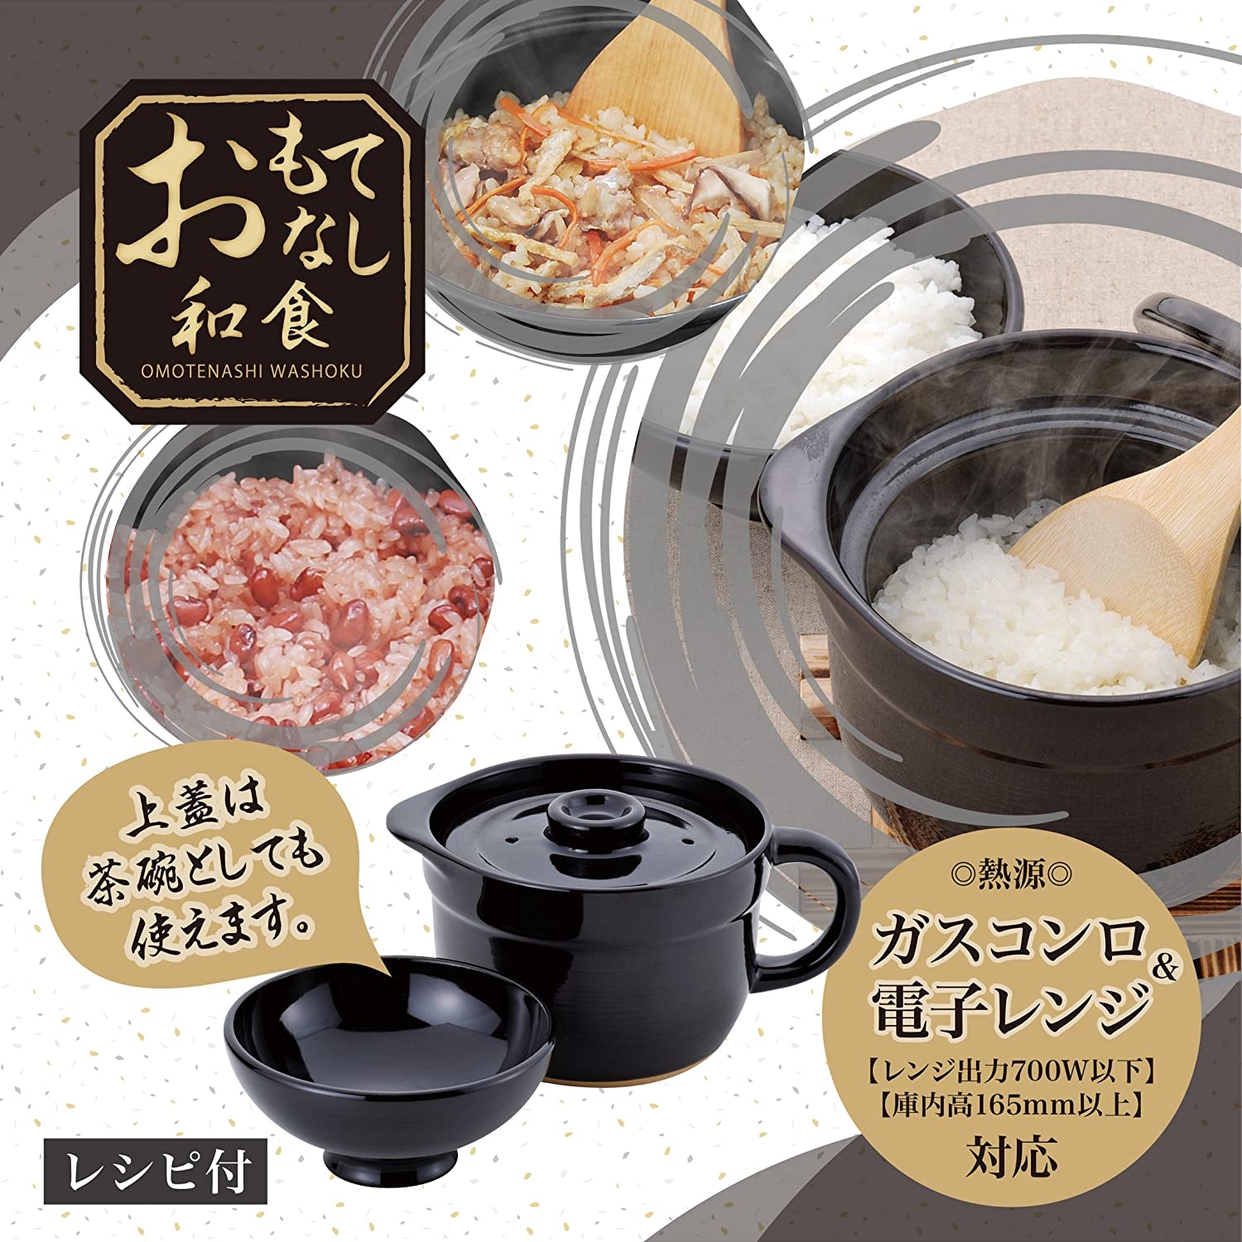 和平フレイズ(FREIZ) おもてなし和食 炊飯土鍋 OR-7109の商品画像サムネ5 